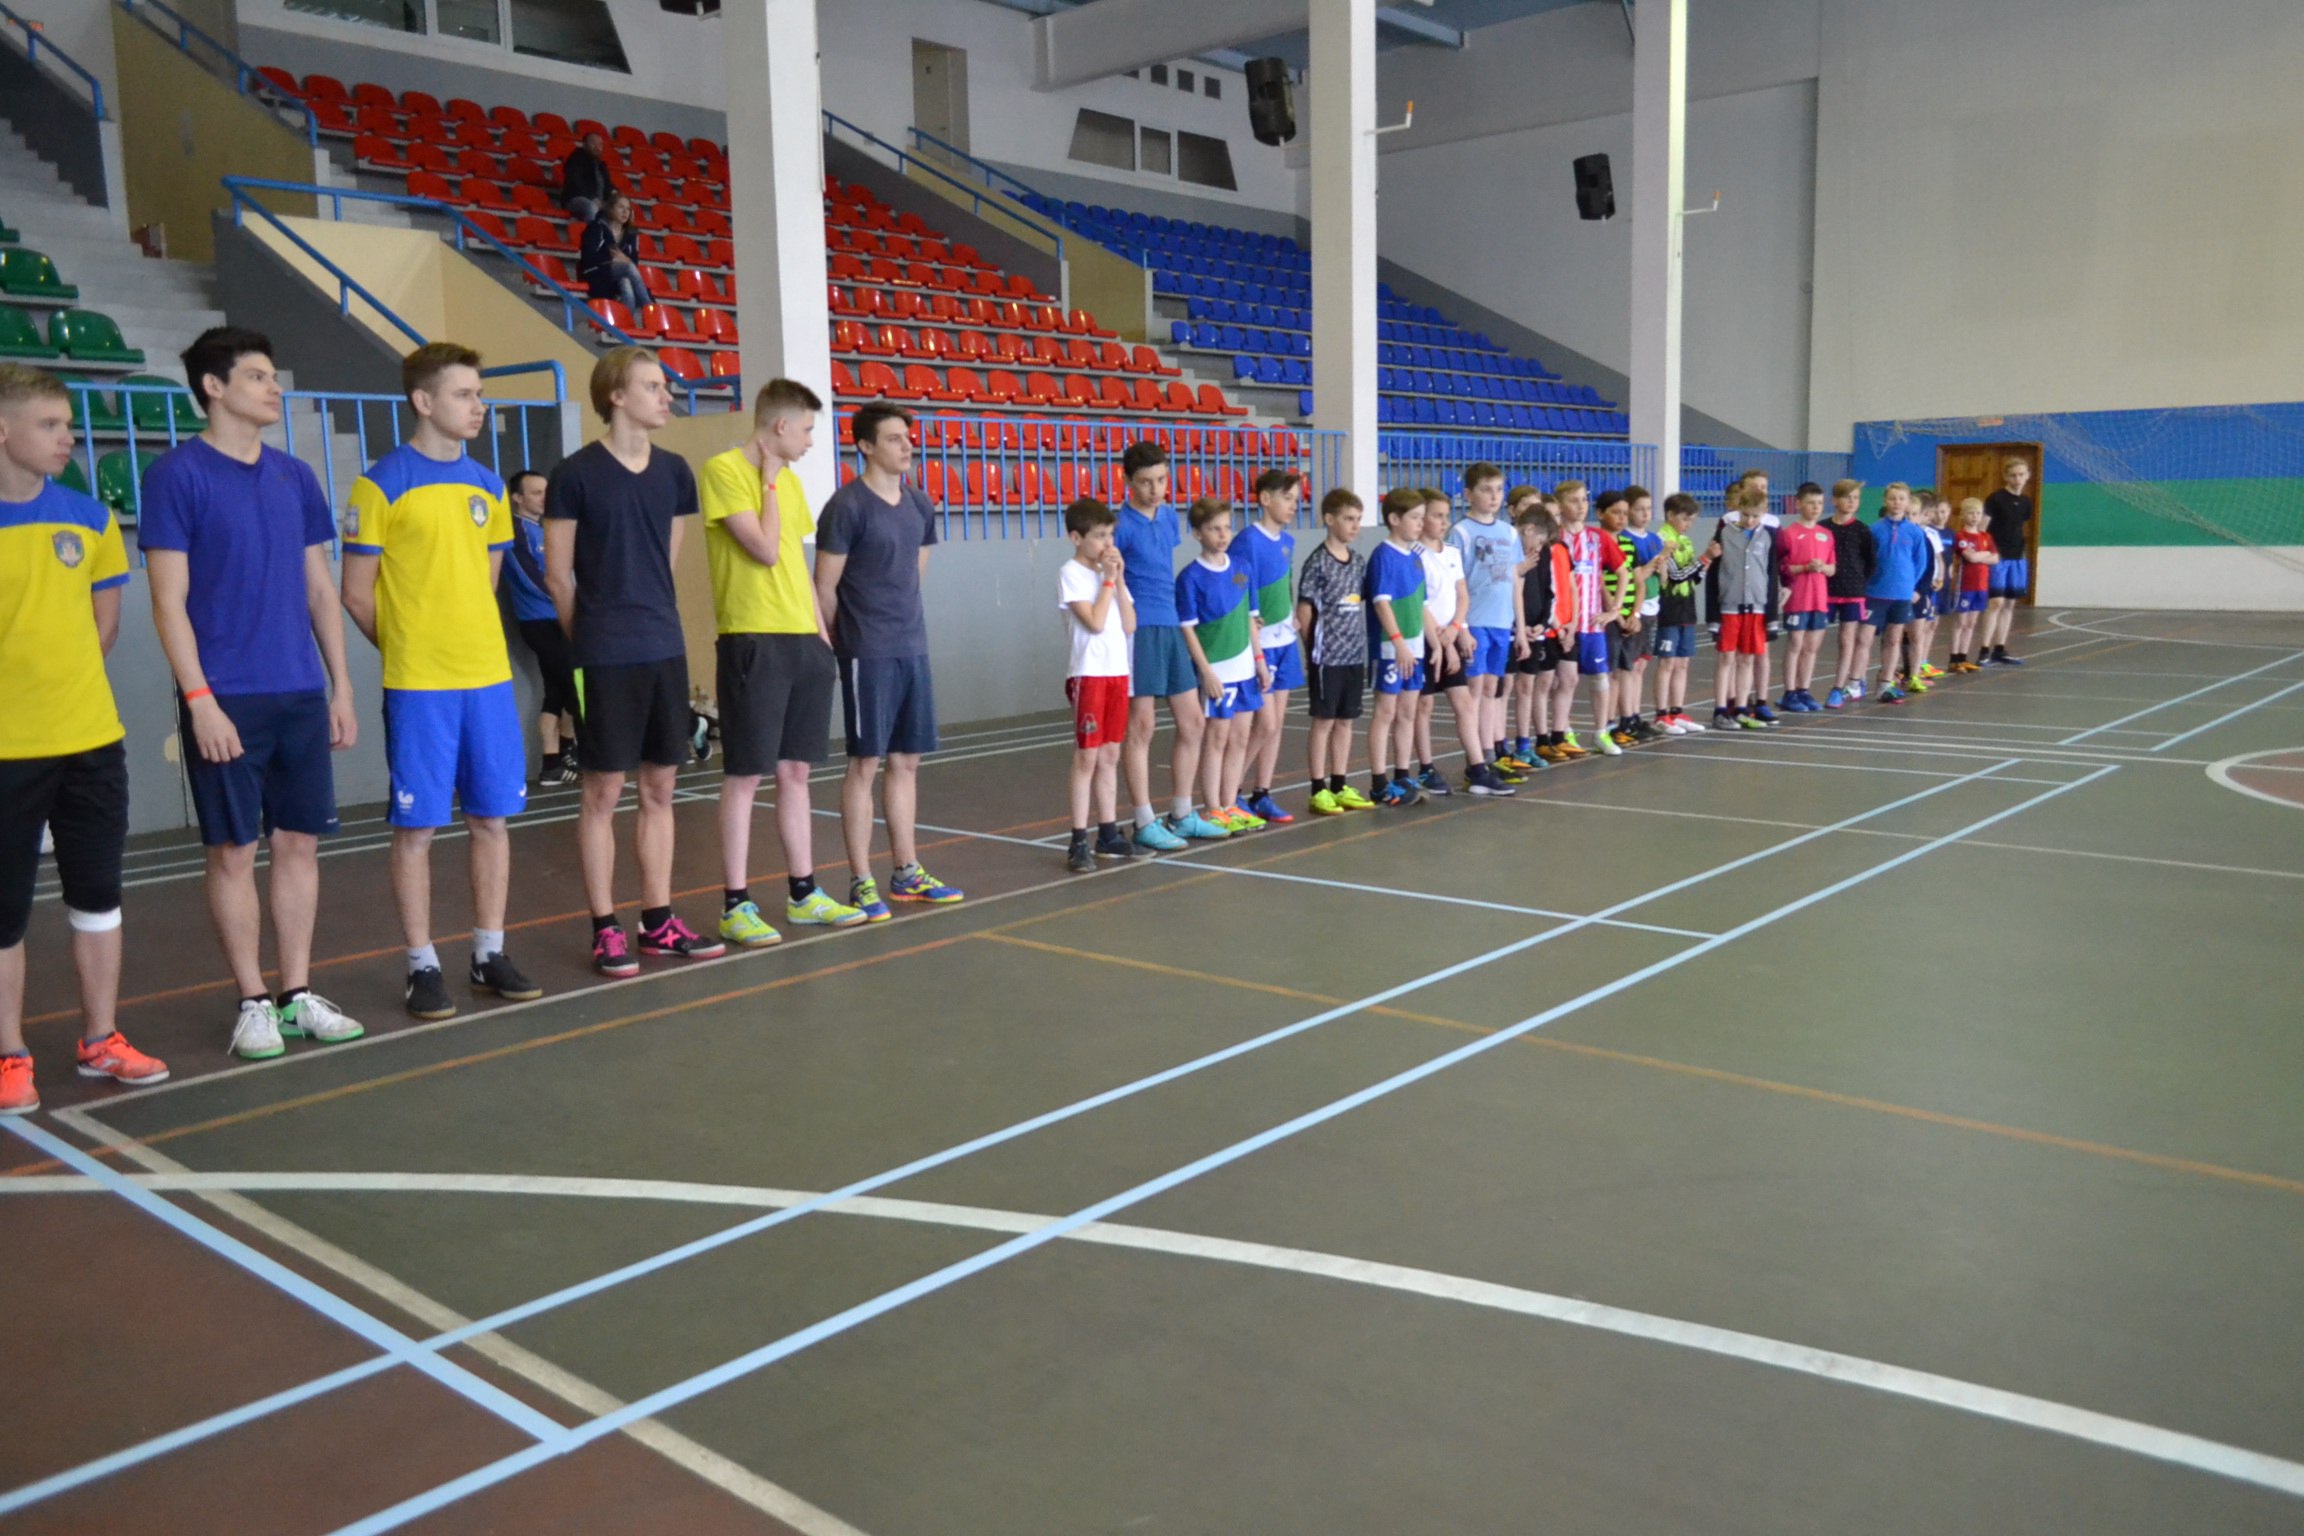  В Республике Коми состоялось физкультурно-спортивное мероприятие в рамках реализации II этапа Всероссийского проекта «Спортивное наследие – здоровая страна!»